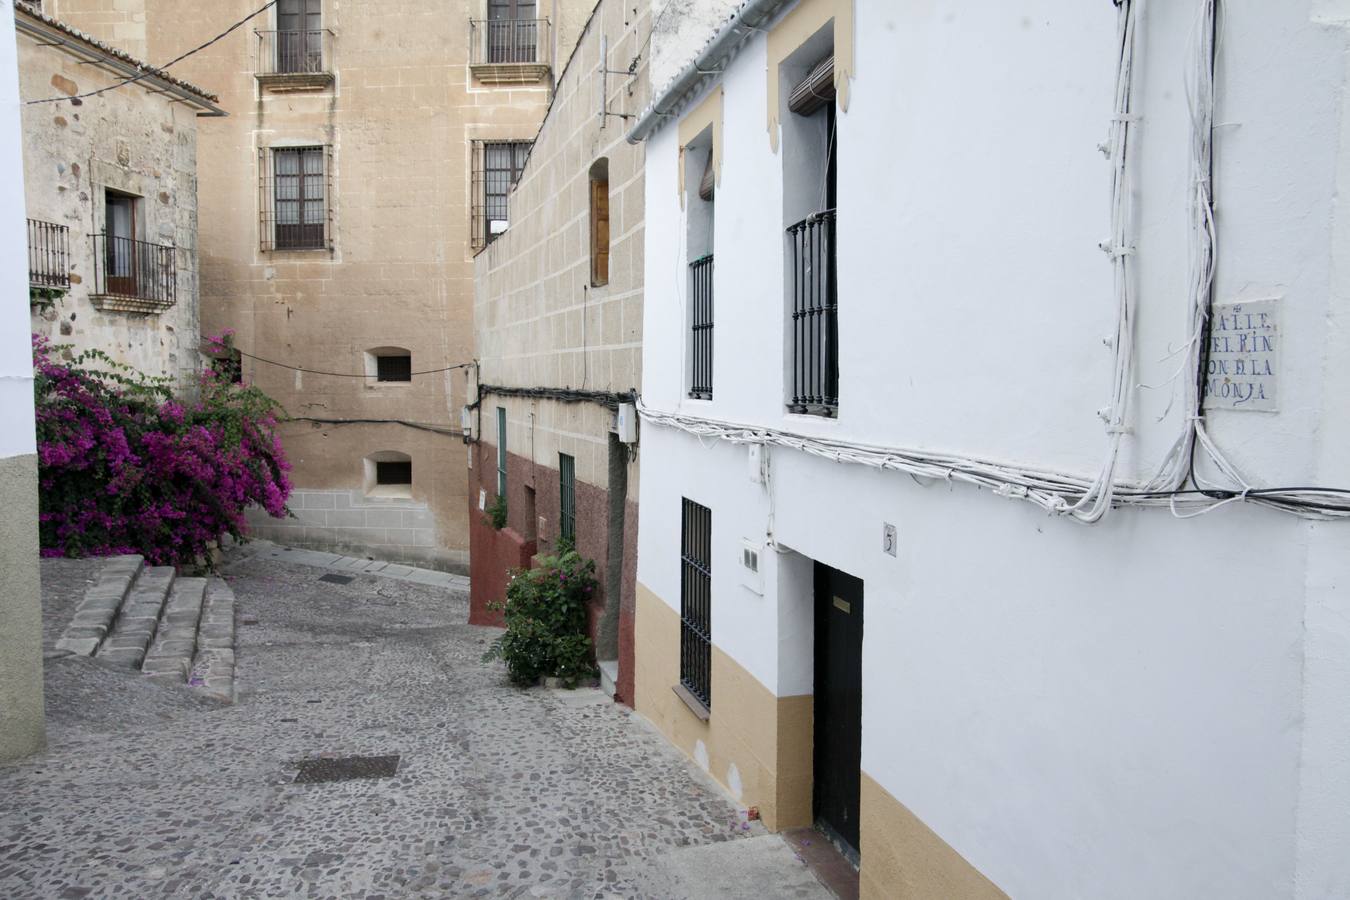 Perviven 11 de los 214 azulejos de calles del siglo XVIII. Son las primeras placas con los nombres de las calles de Cáceres y se hicieron para facilitar el recaudar impuestos